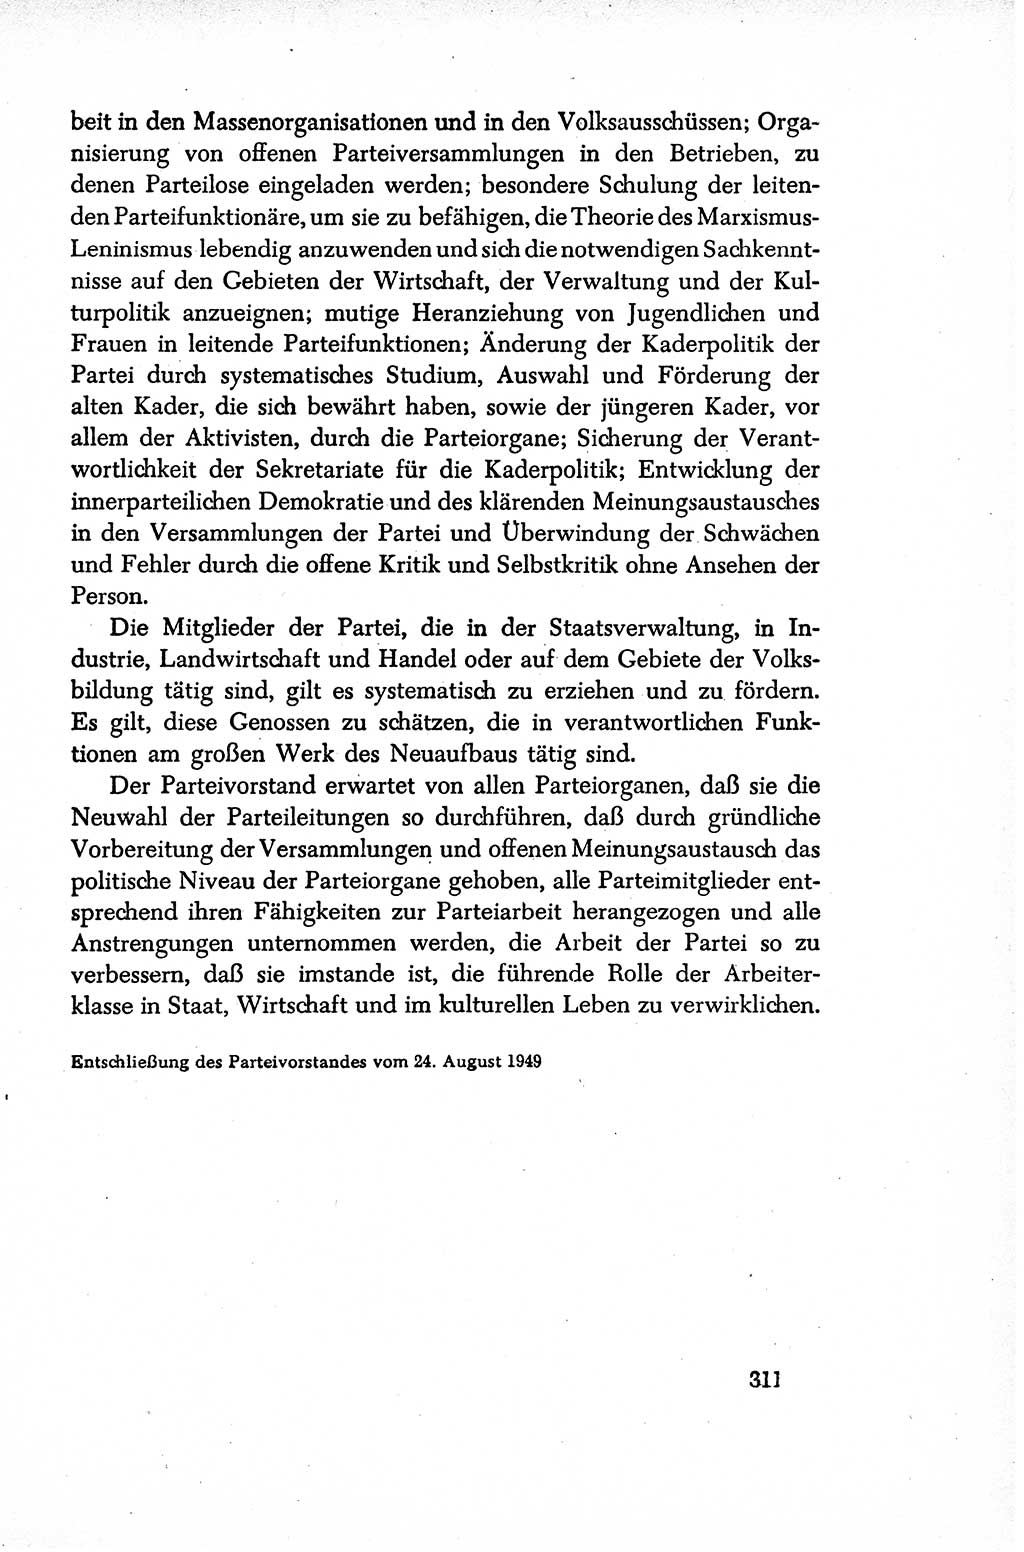 Dokumente der Sozialistischen Einheitspartei Deutschlands (SED) [Sowjetische Besatzungszone (SBZ) Deutschlands/Deutsche Demokratische Republik (DDR)] 1948-1950, Seite 311 (Dok. SED SBZ Dtl. DDR 1948-1950, S. 311)